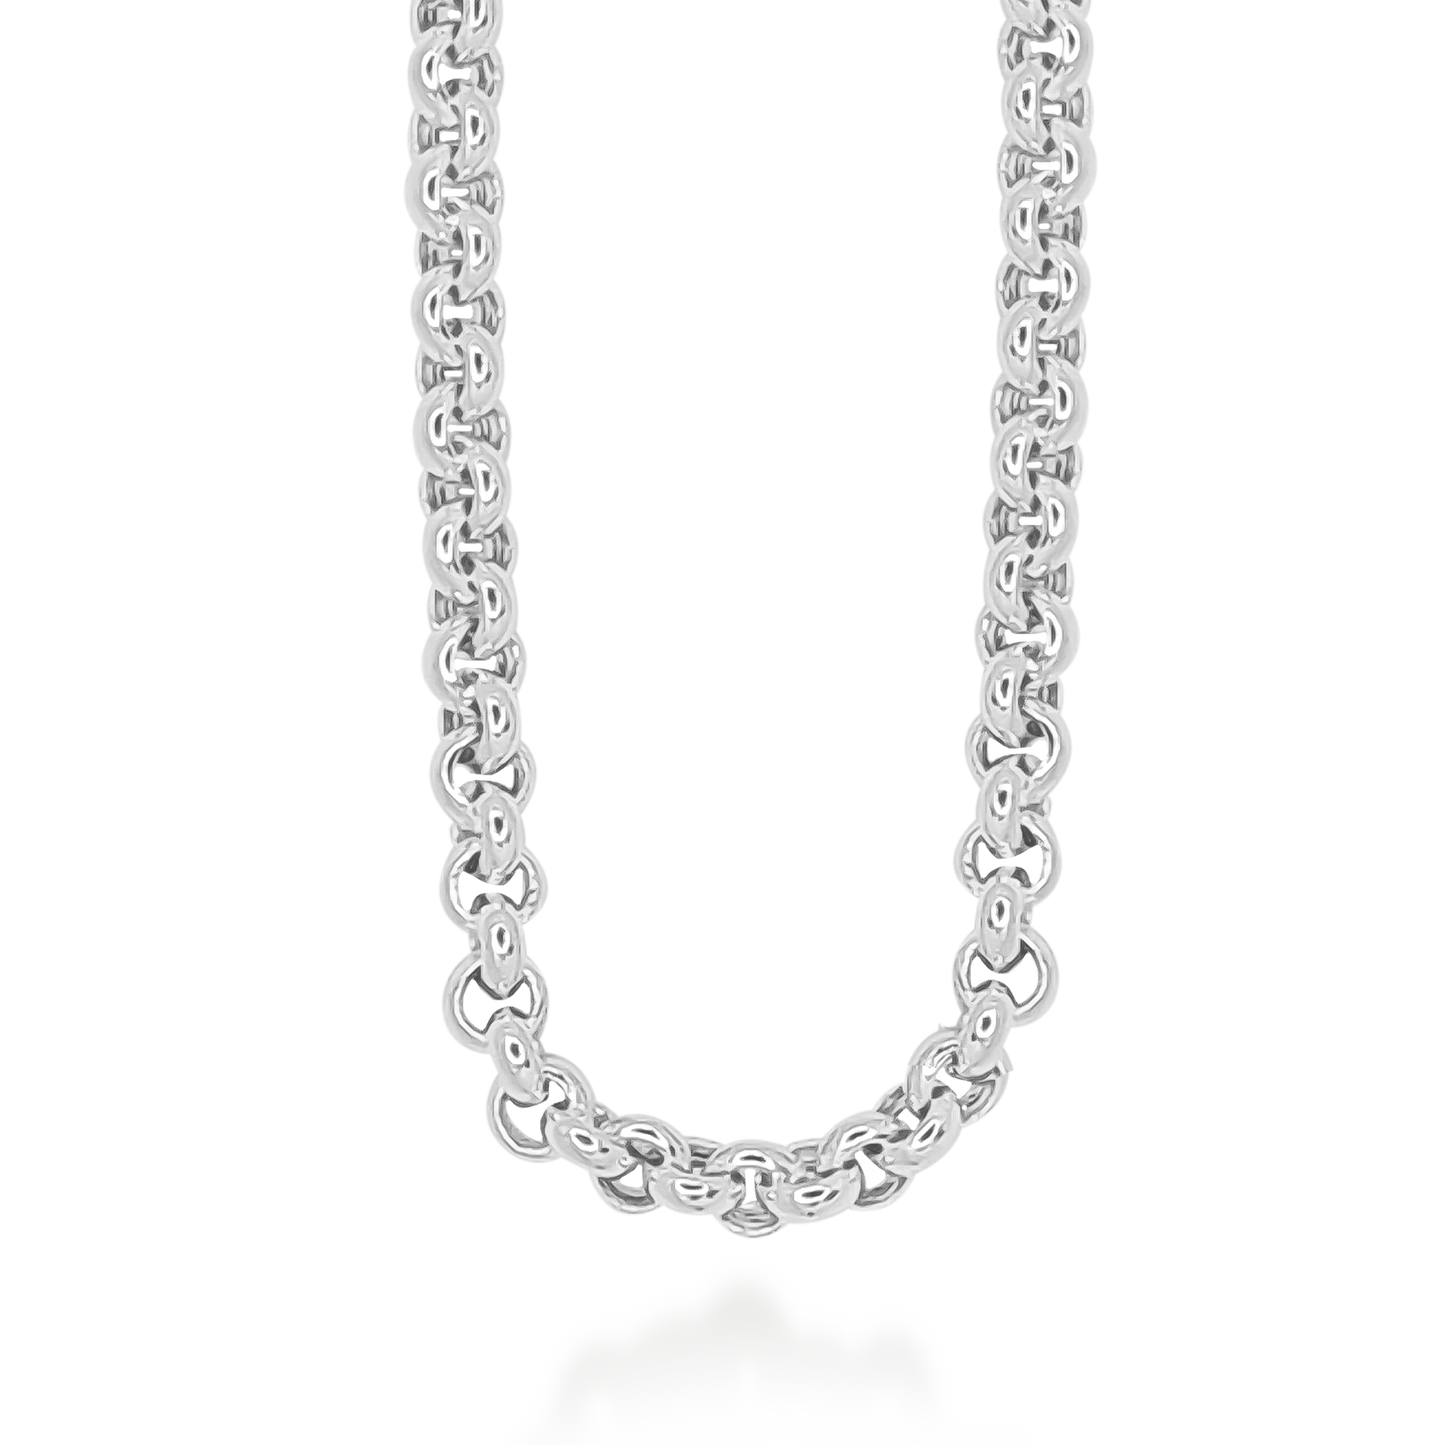 Belcher Link Necklace & Bracelet set in 9ct White Gold